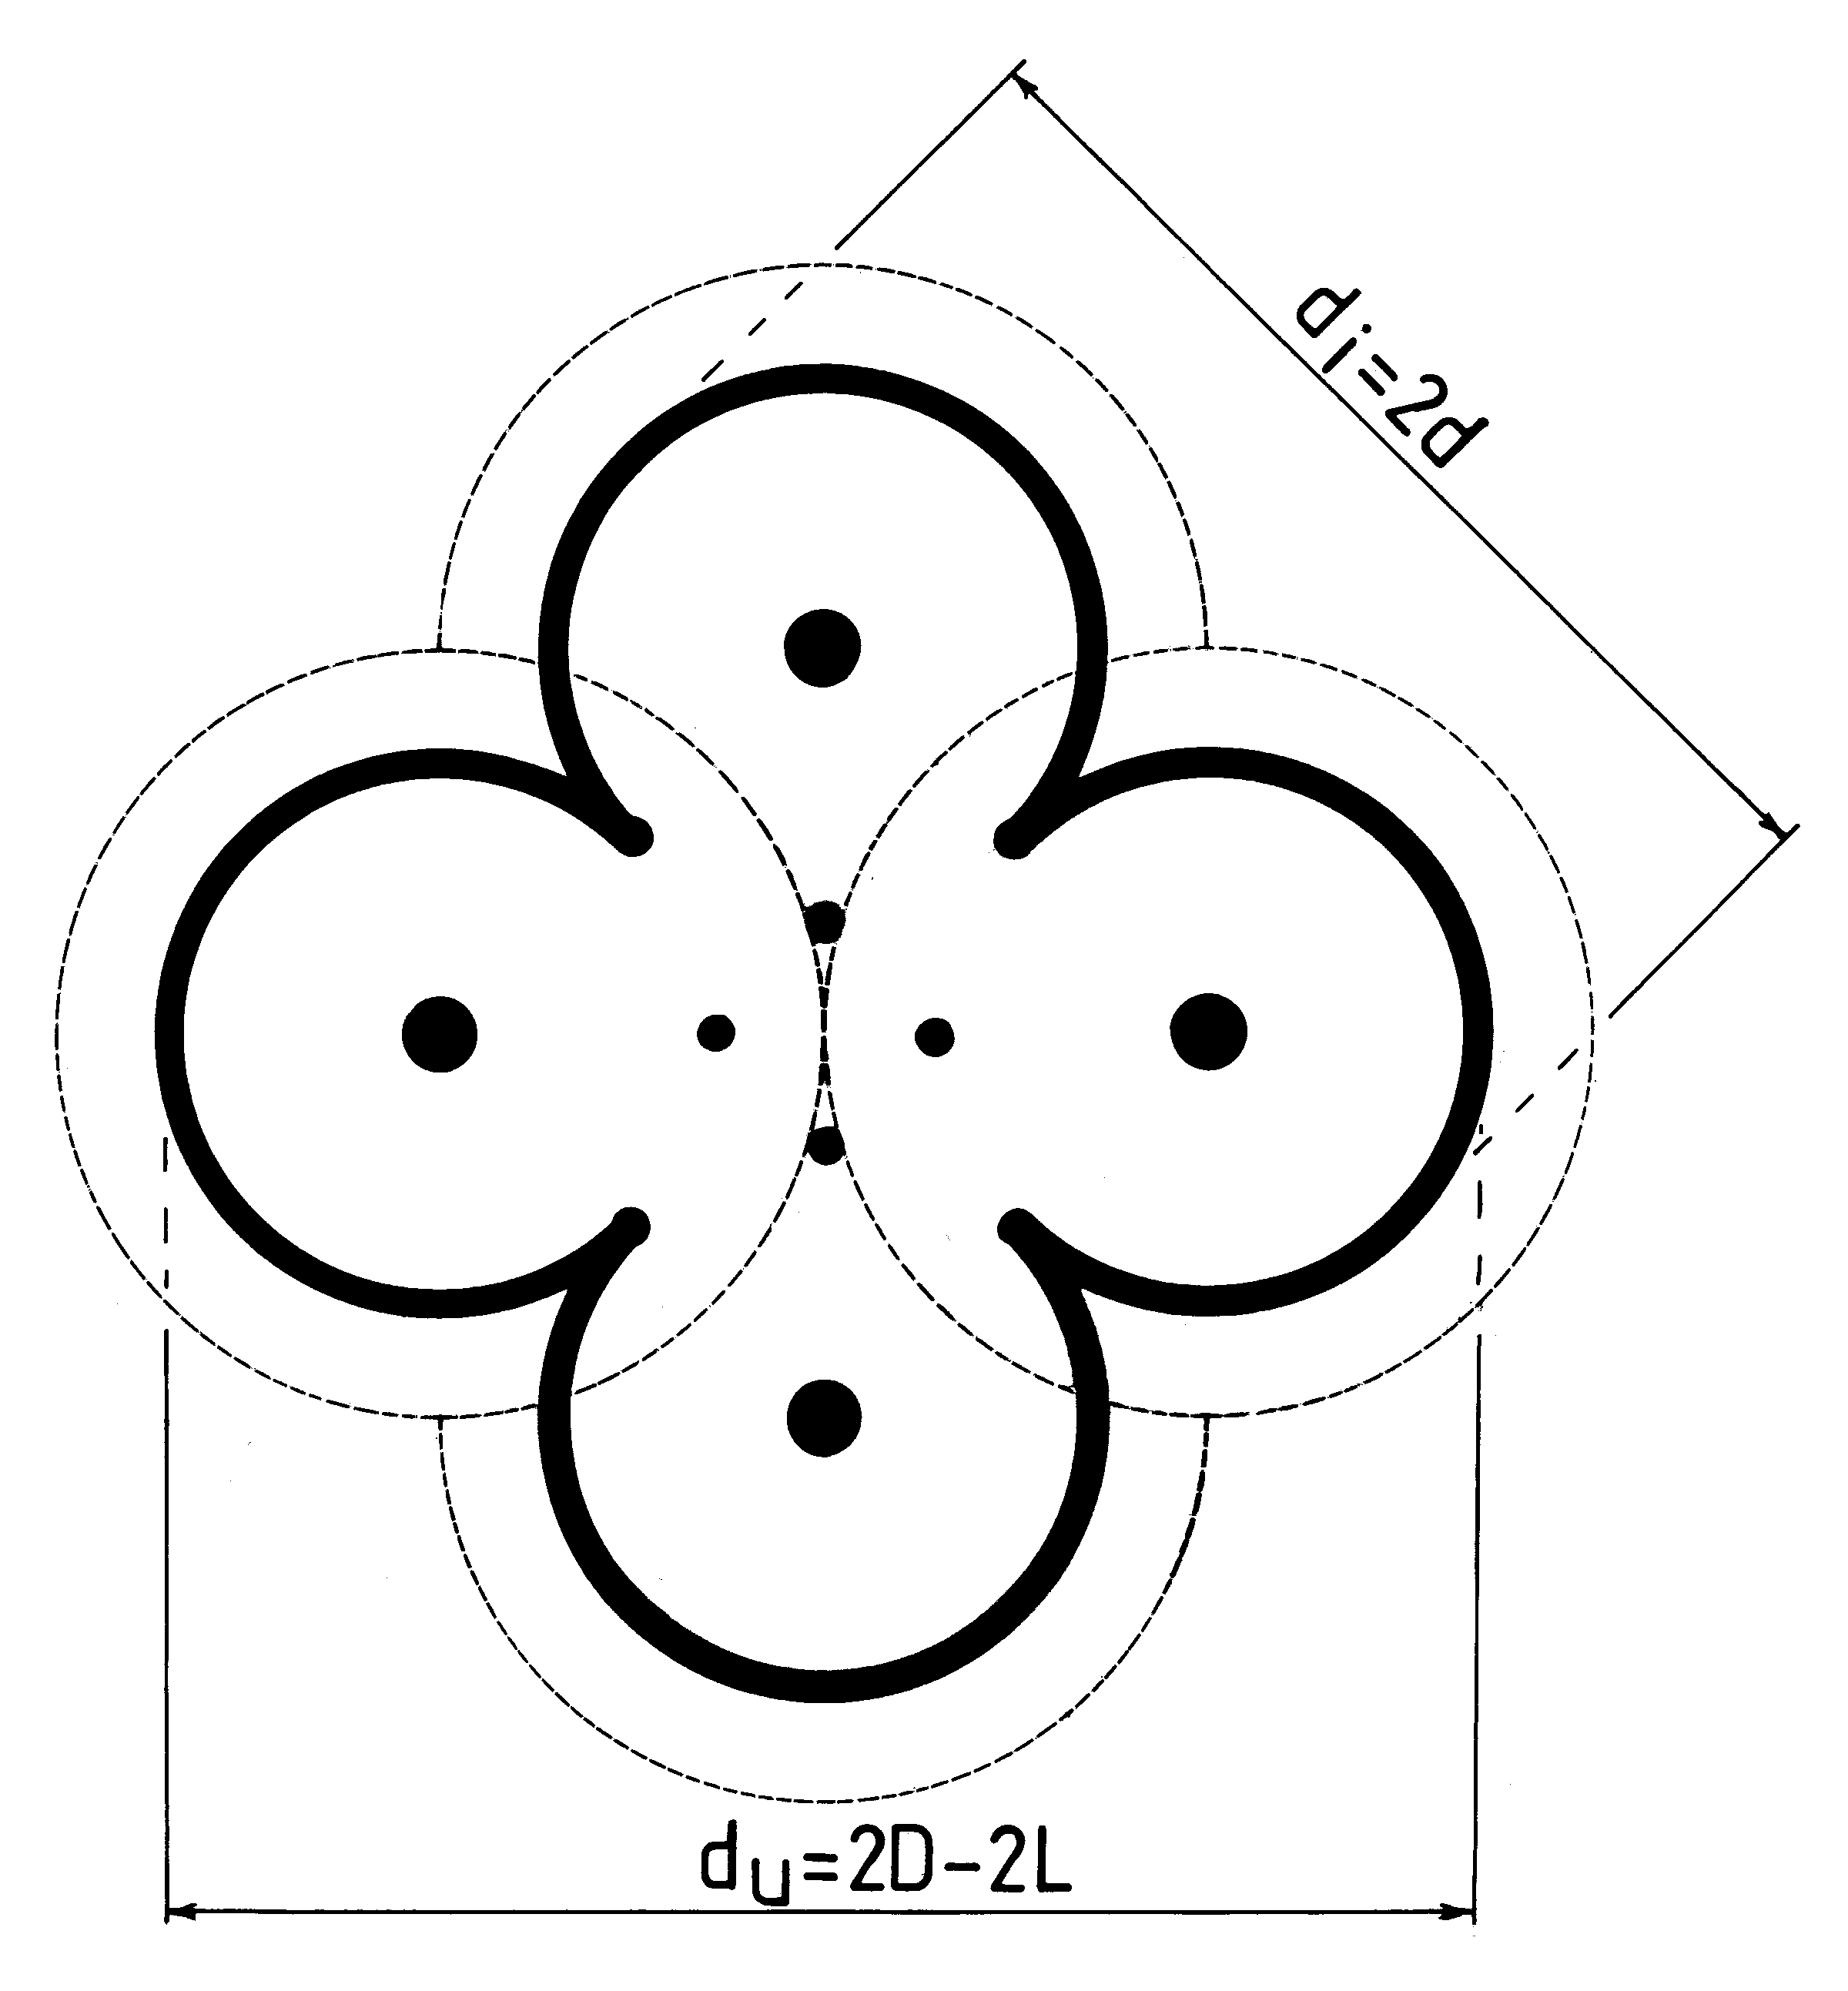 Fig./Rys. P2(b) in/w [1/3]